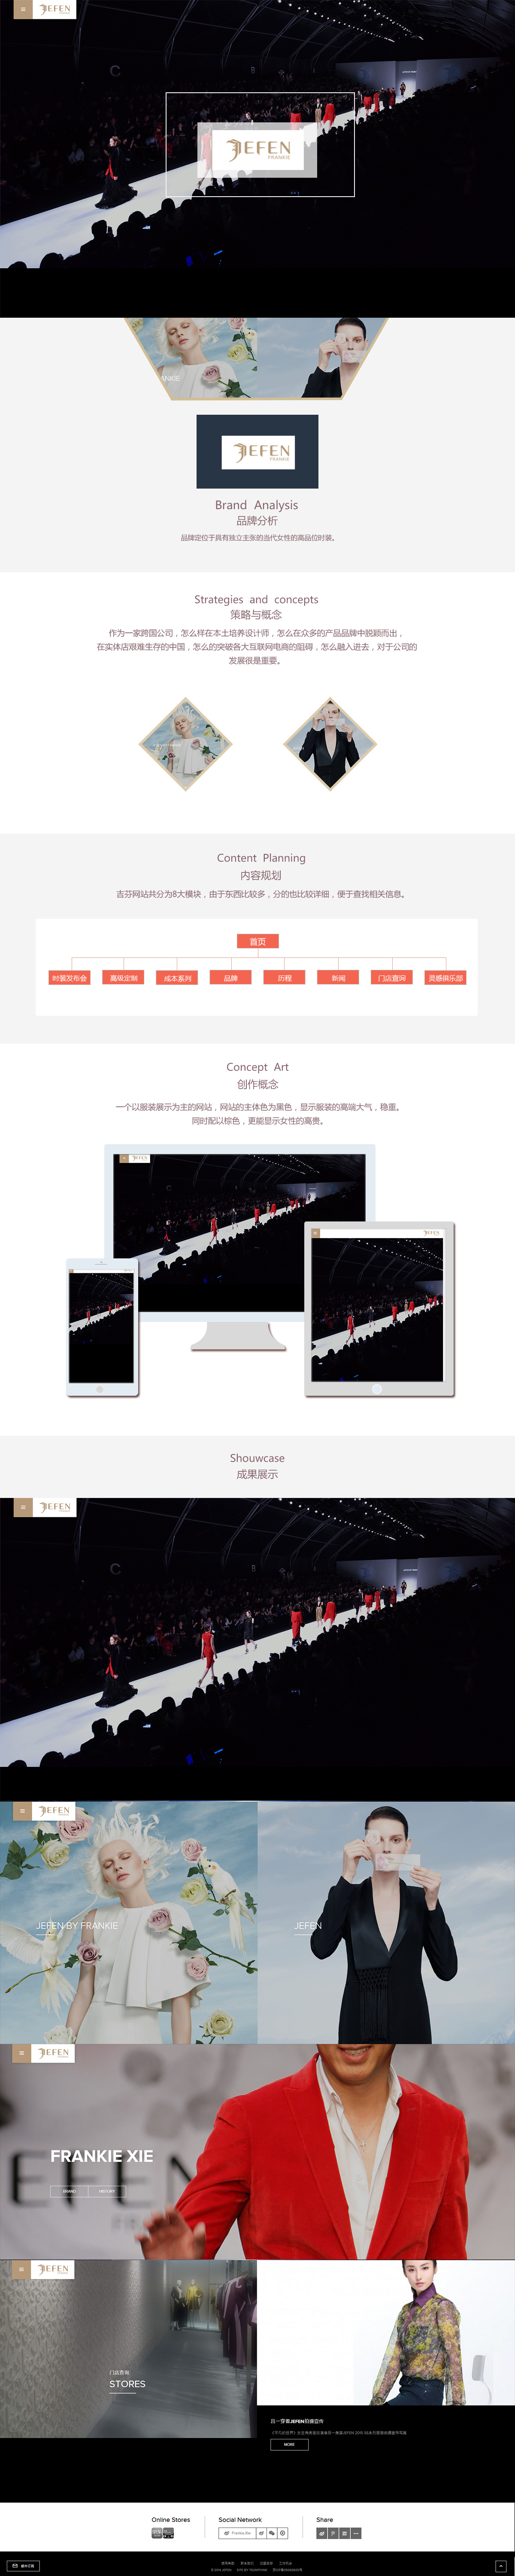 北京中联学艺科技有限公司 响应式网站开发案例 吉芬